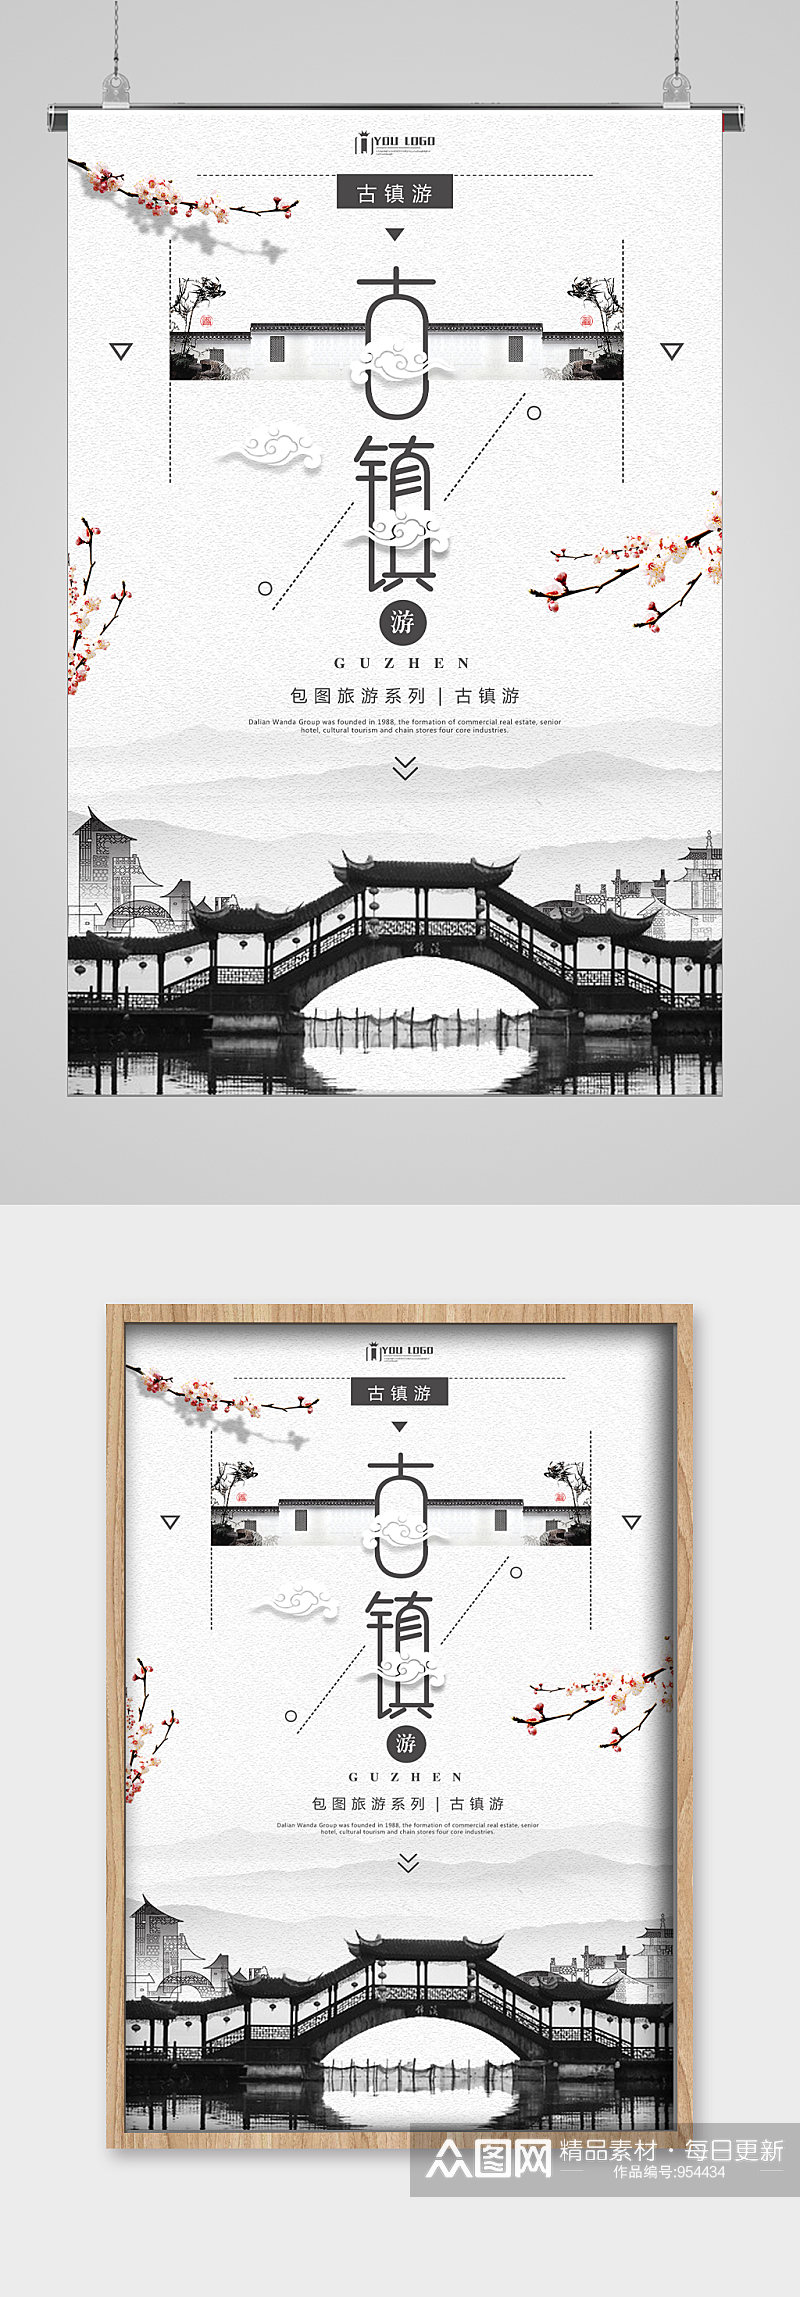 古镇旅游小桥宣传海报素材